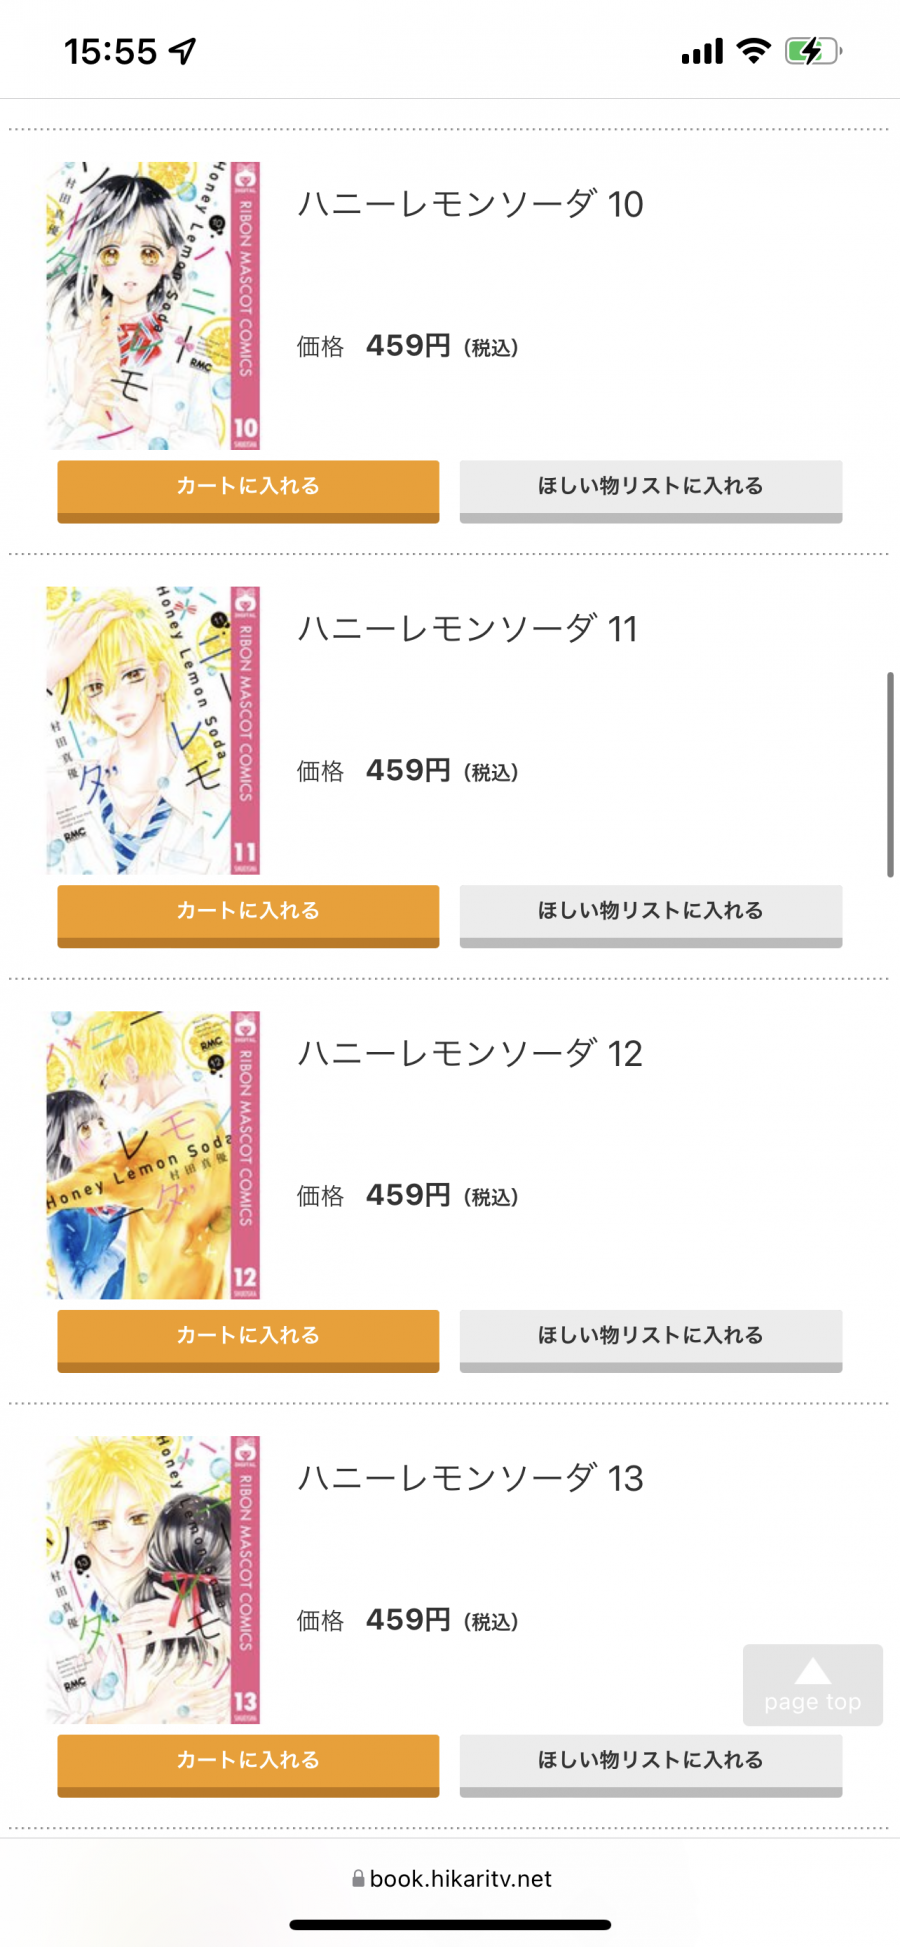 「コミック.jp」の『ハニーレモンソーダ』10〜13巻